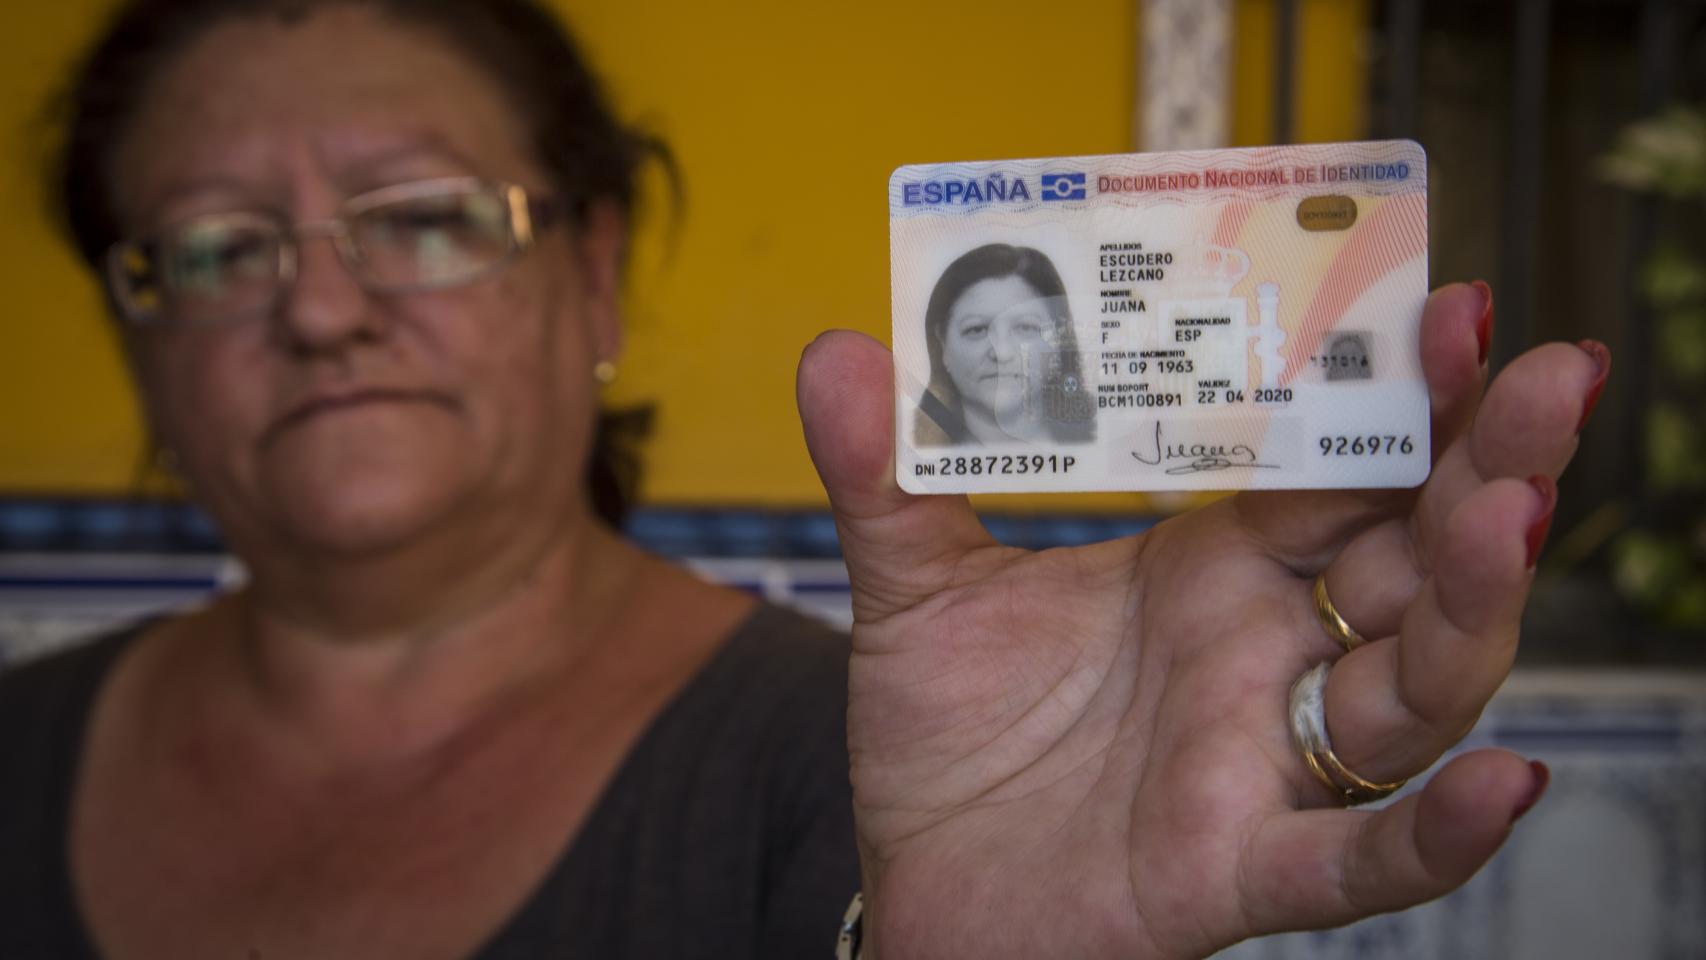 Фото с паспортом в руках женщины пенсионерки